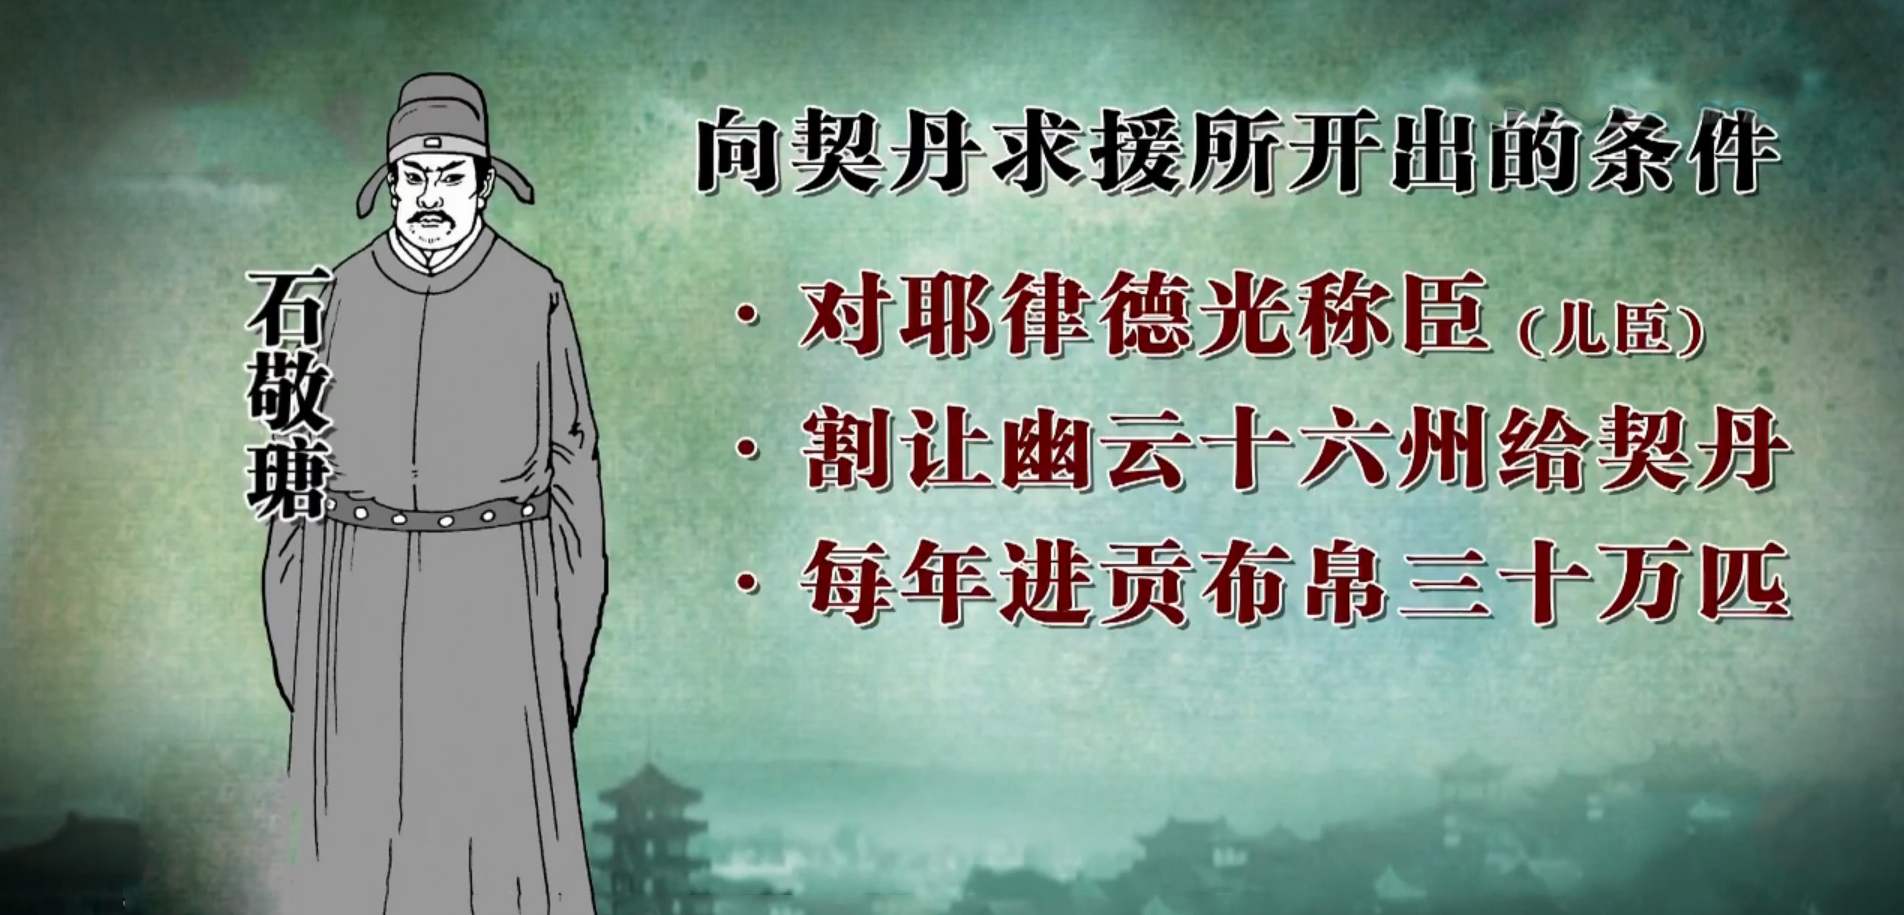 从石敬瑭开始，中国有了“儿皇帝”这一可耻的称呼